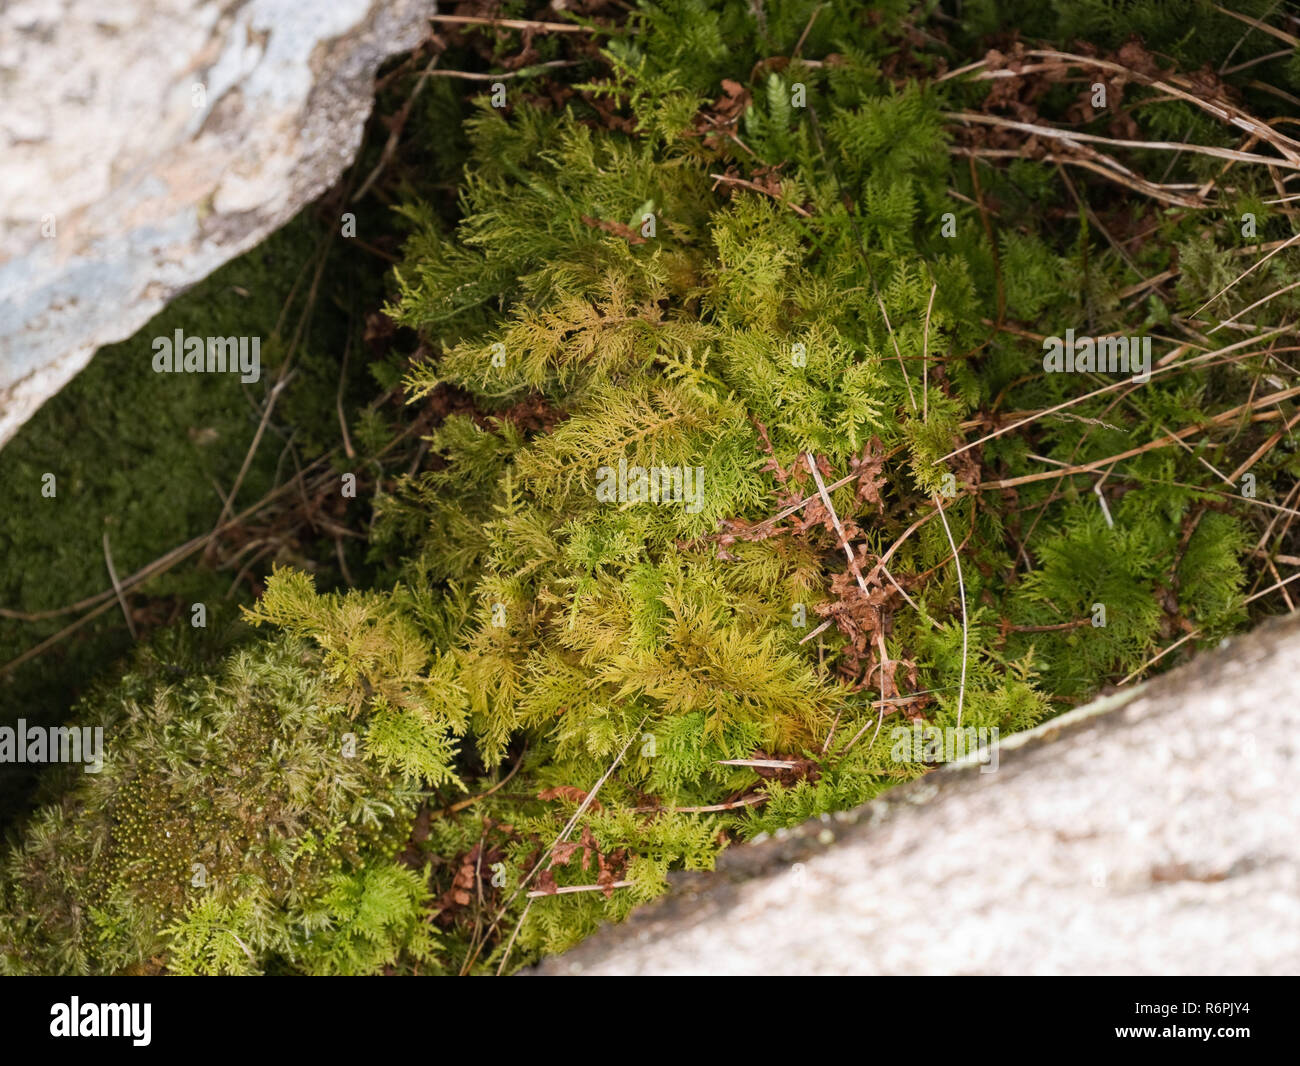 Thuidium tamariscinum, tamarisco moss, una especie común de bosques y pastizales, favoreciendo los lugares húmedos. Se muestra aquí en Cwm Idwal, Snowdonia Foto de stock